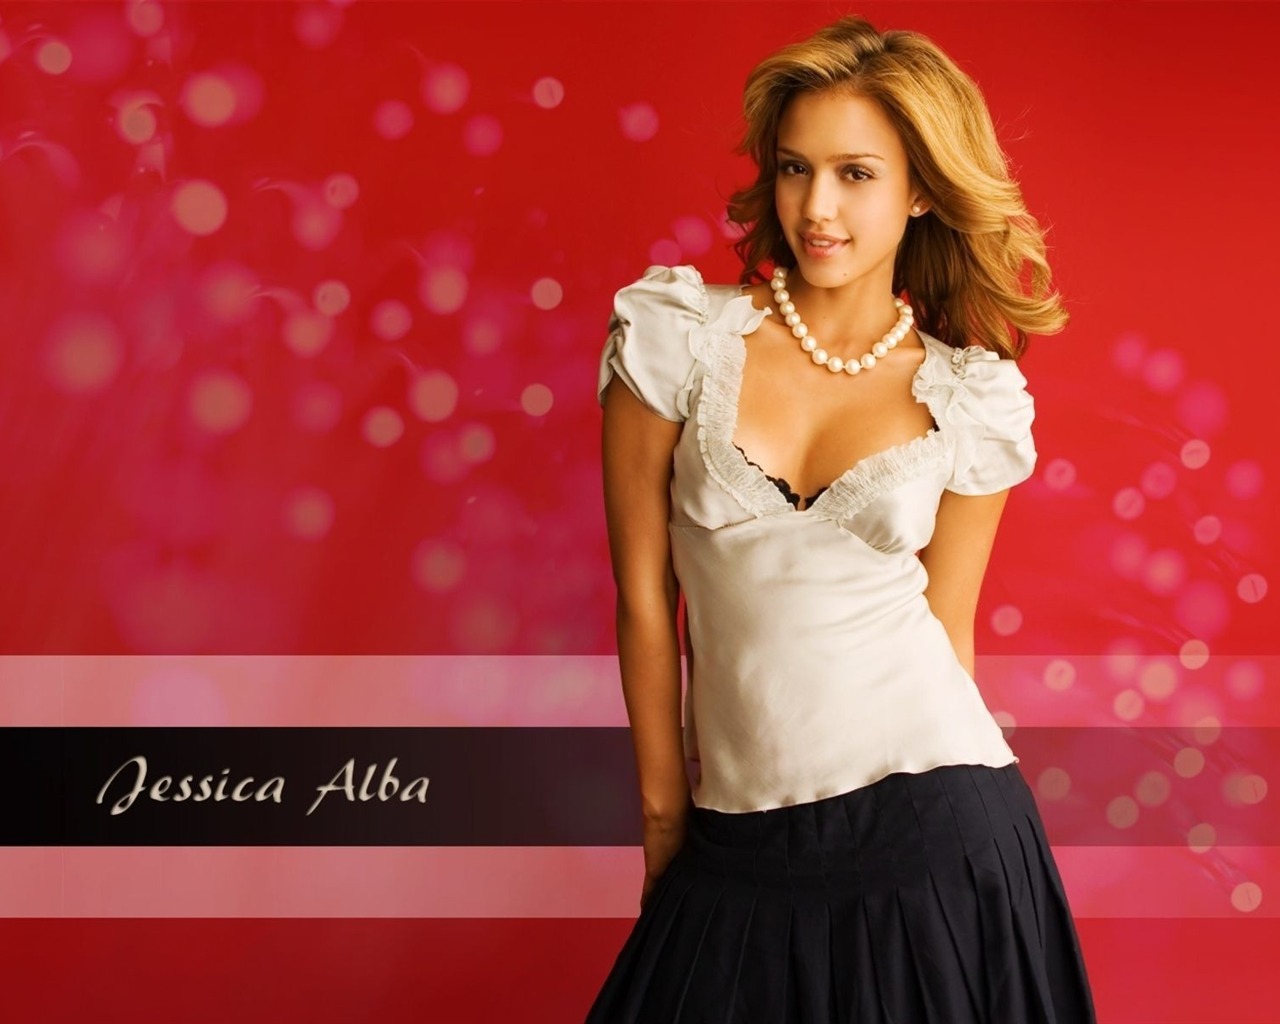 Jessica Alba beautiful wallpaper (8) #18 - 1280x1024